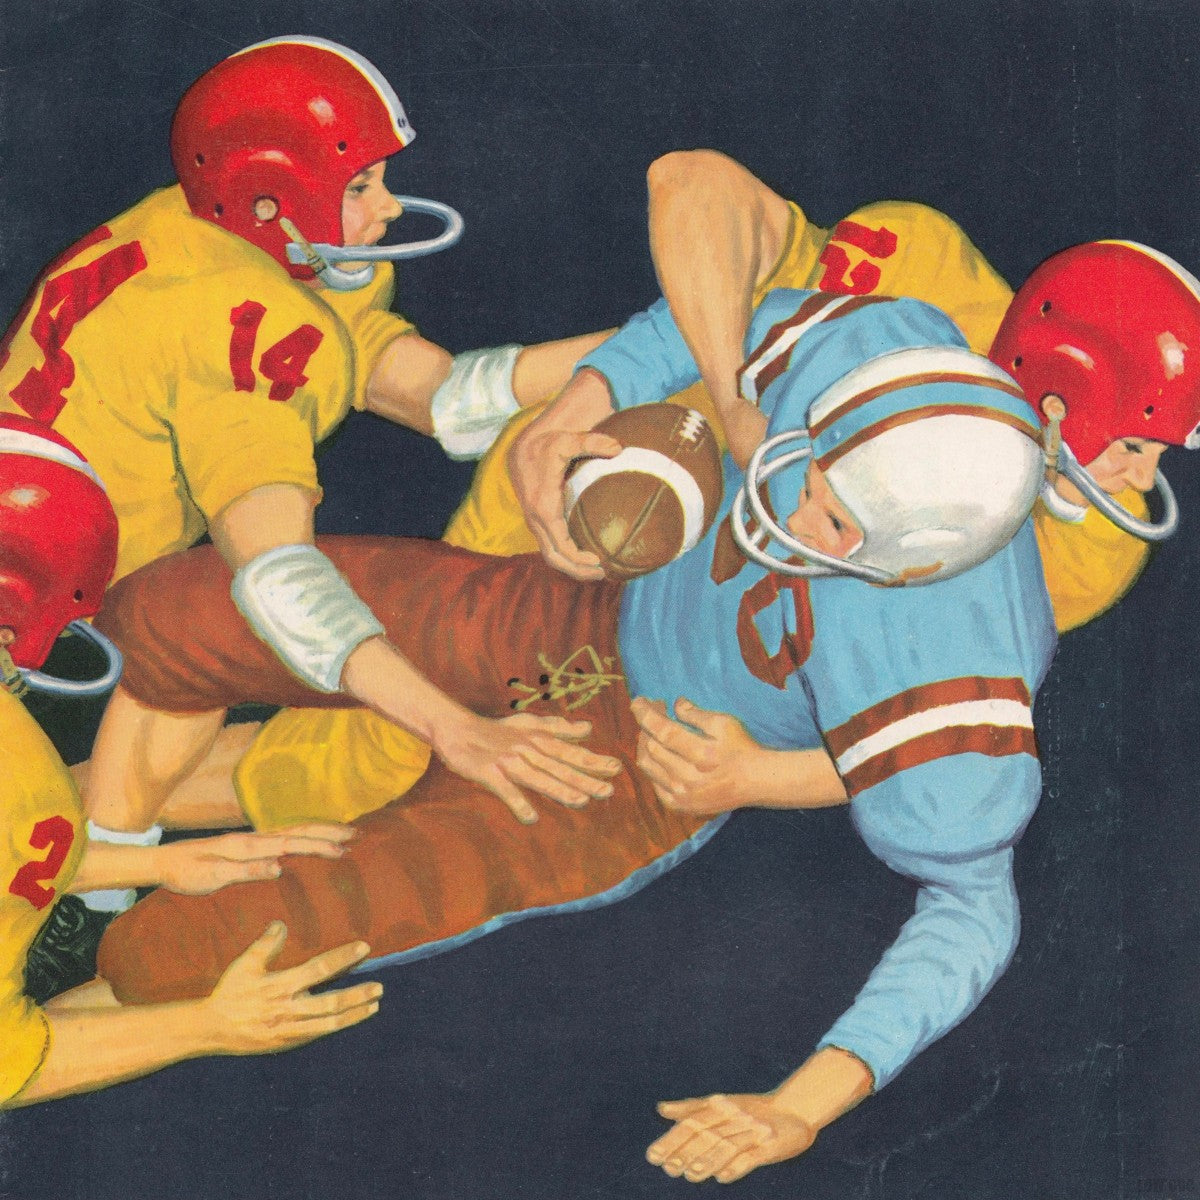 1959 Vintage Football Art